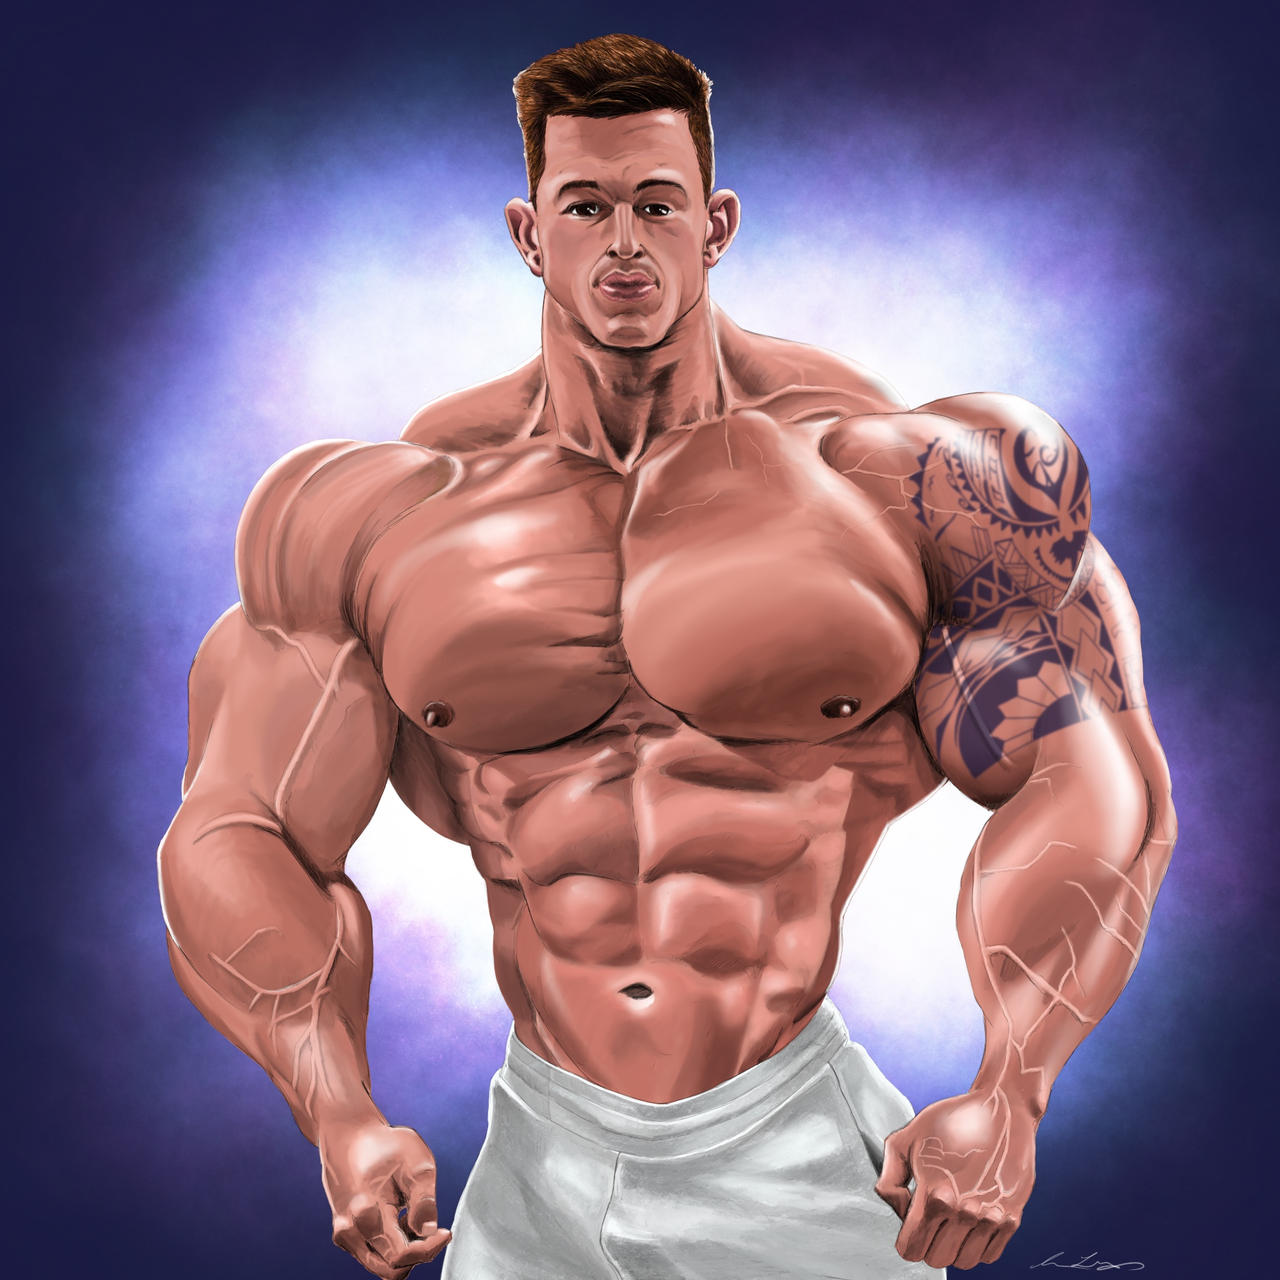 Craig morton bodybuilder